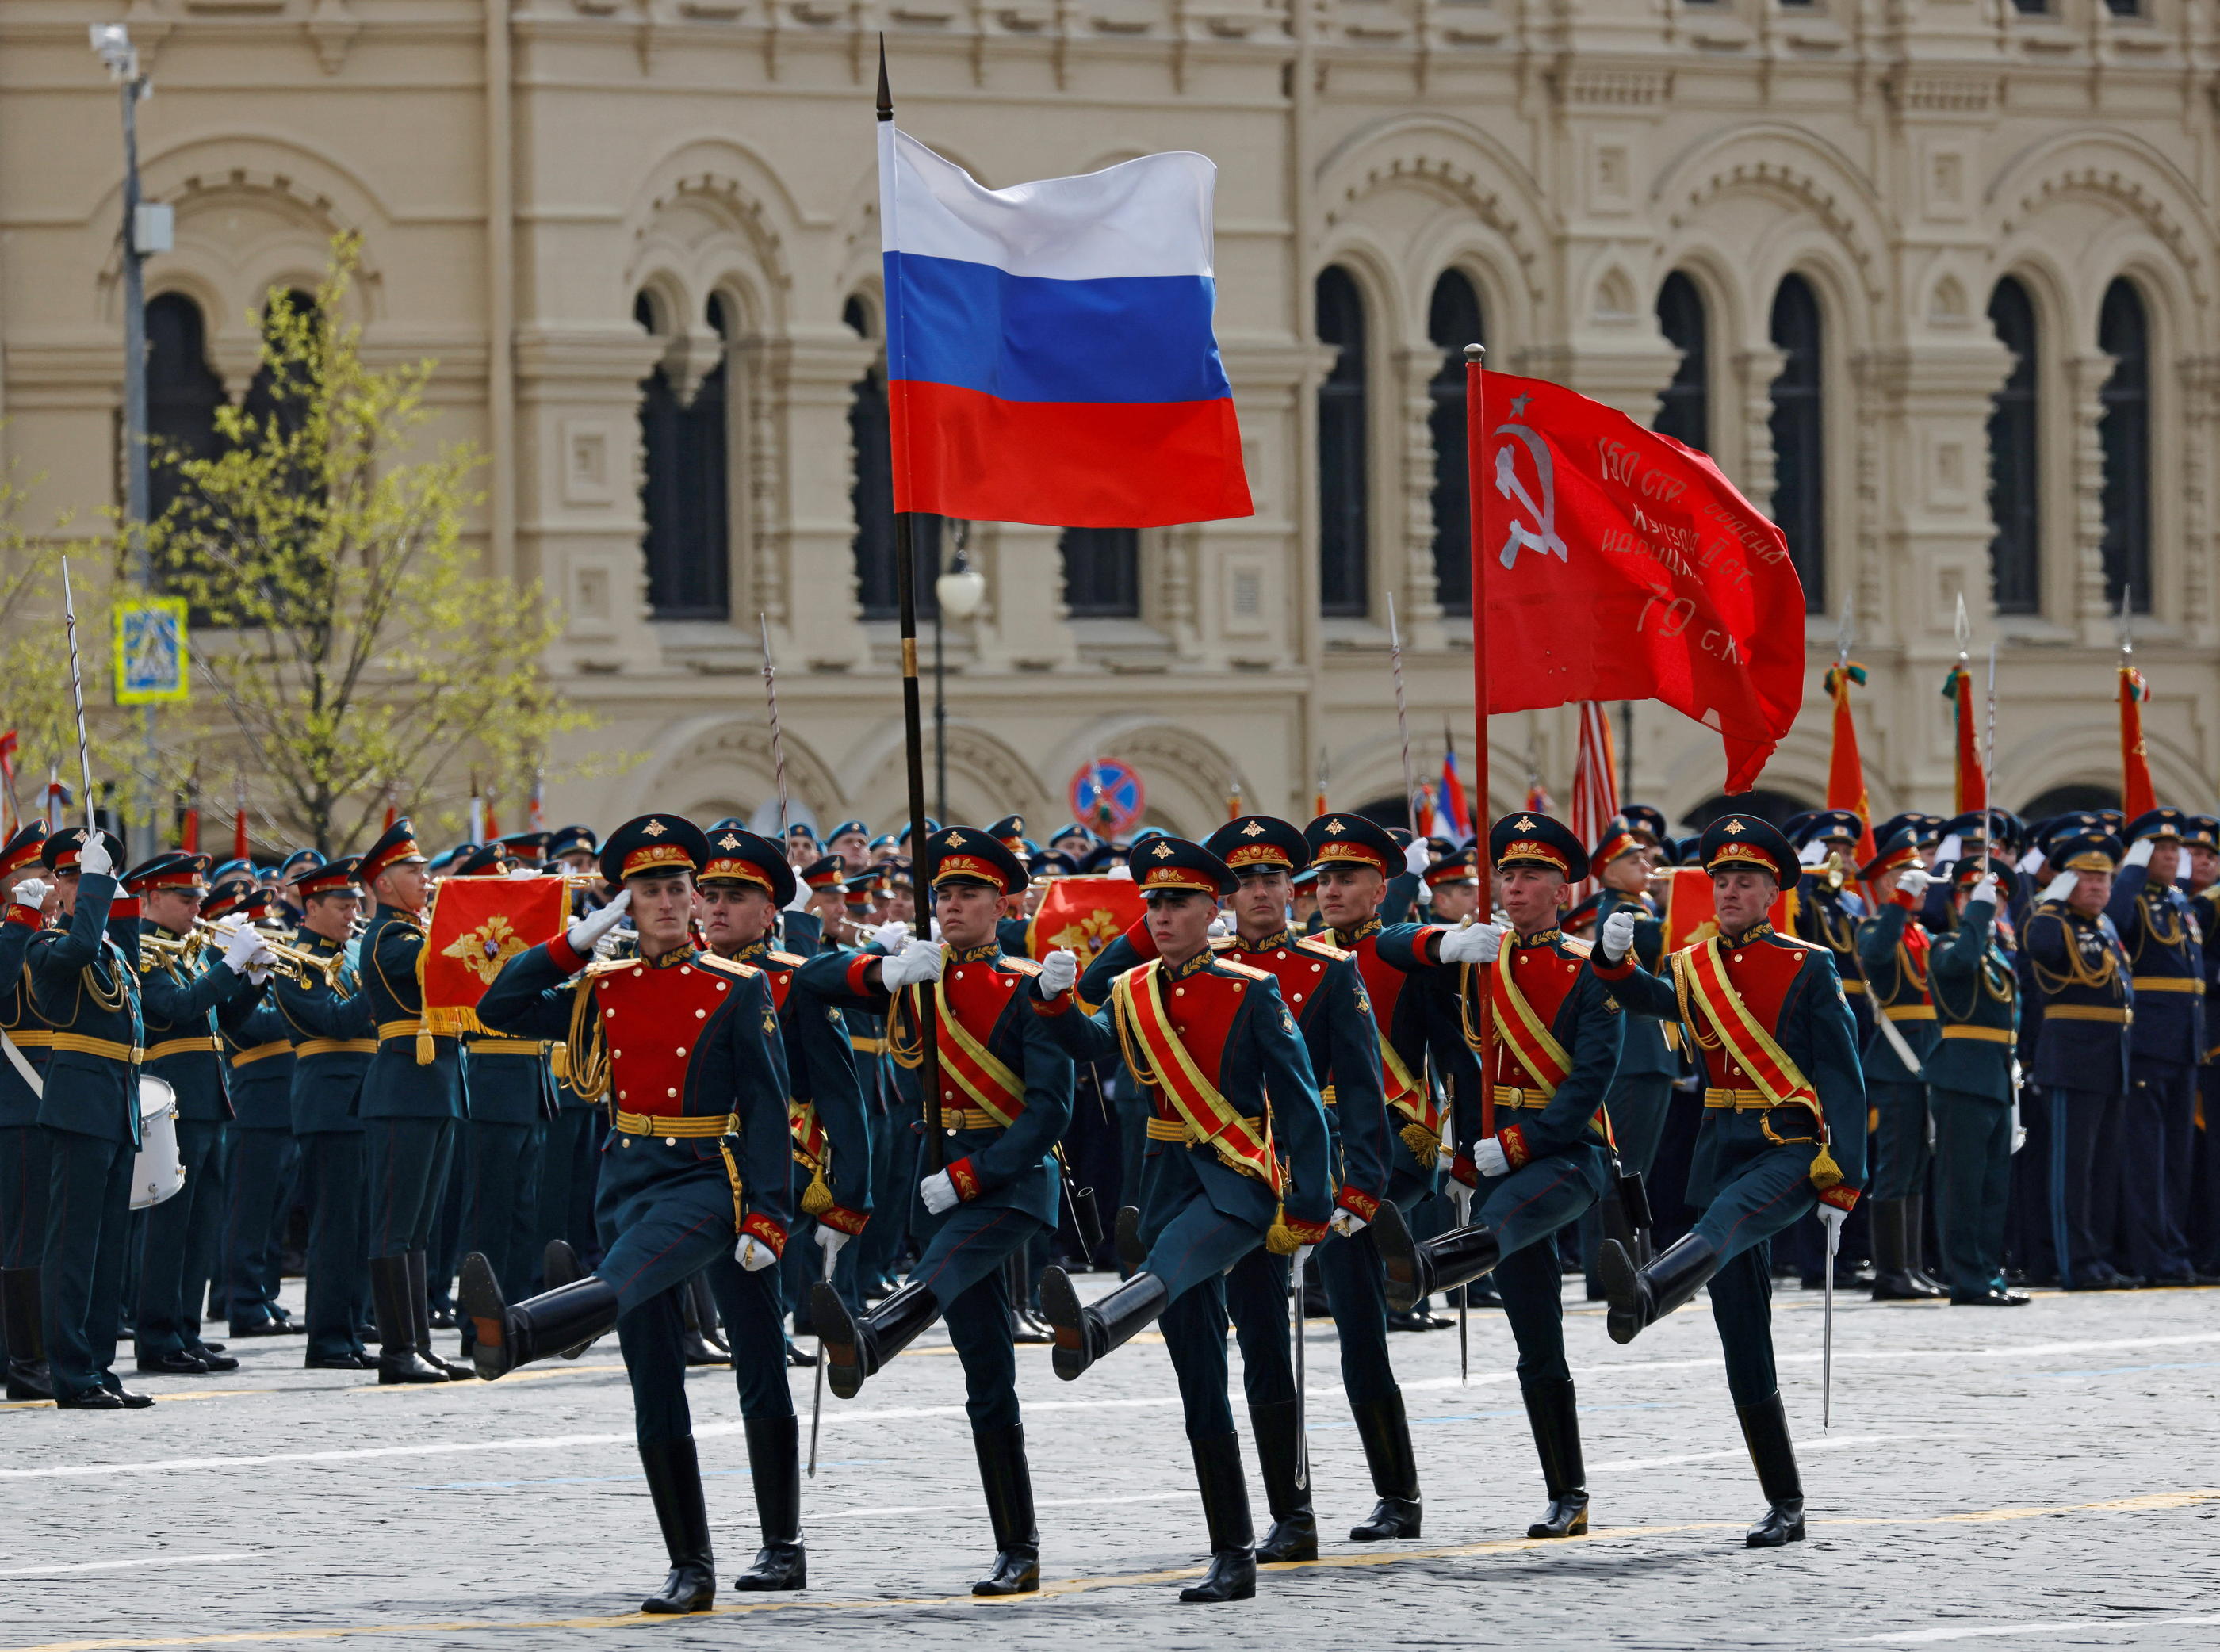 La traditionnelle parade militaire prévue sur la place Rouge à Moscou, qui célèbre la victoire soviétique contre l’Allemagne nazie lors de la Seconde Guerre mondiale, est maintenue. Reuters/Maxim Shemetov